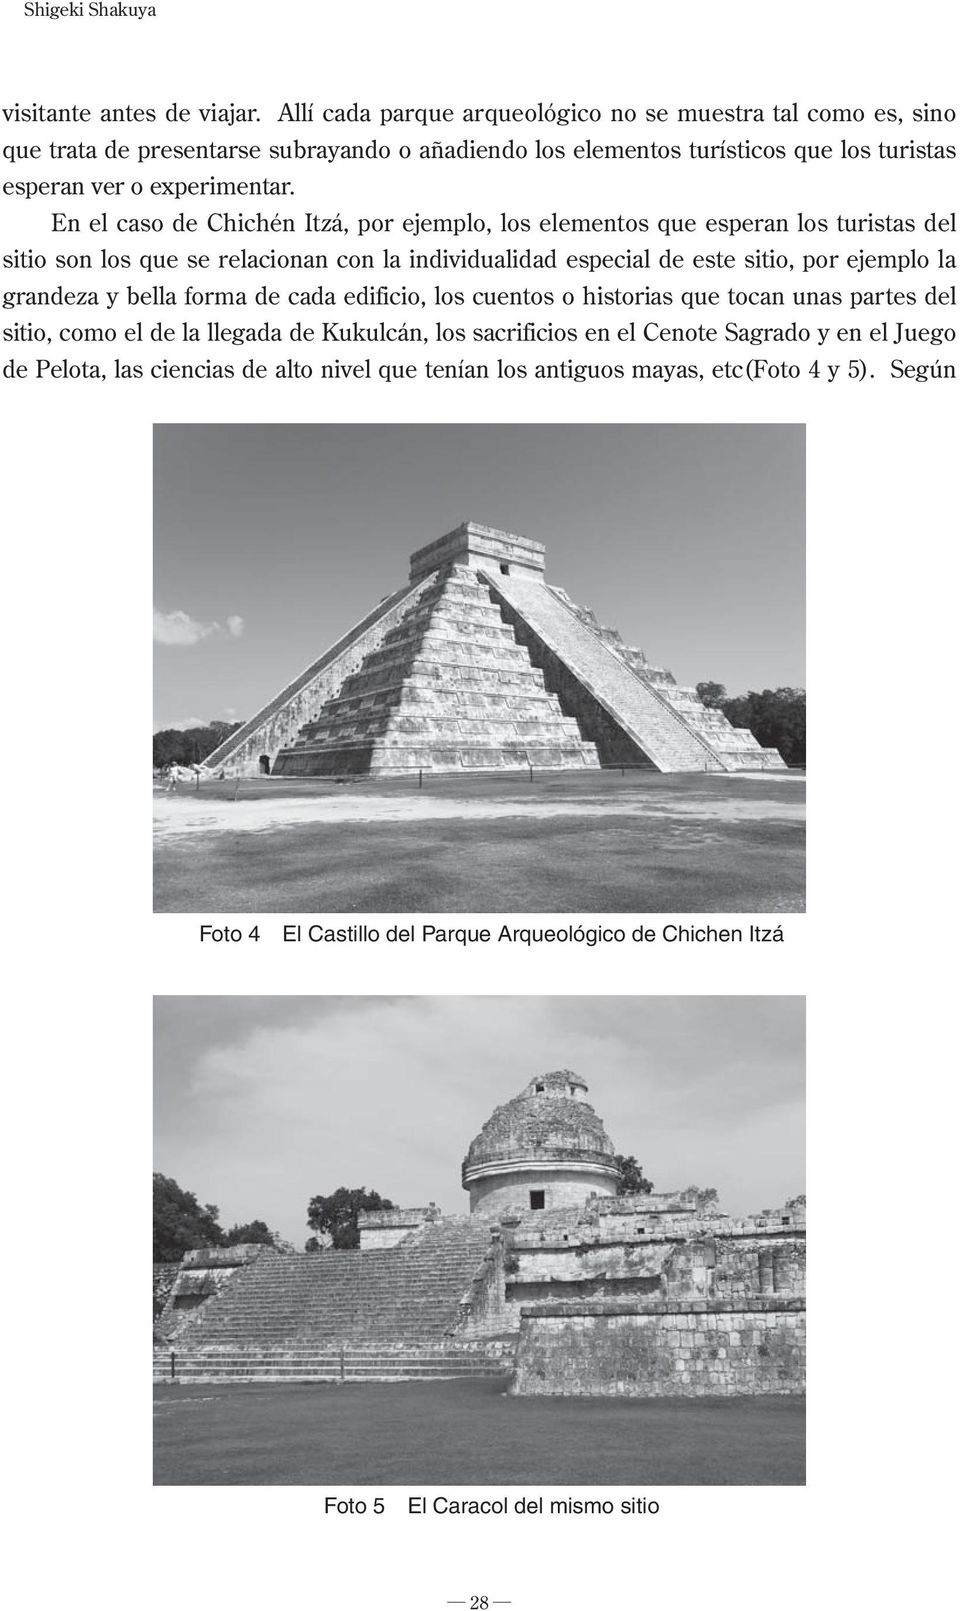 En el caso de Chichén Itzá, por ejemplo, los elementos que esperan los turistas del sitio son los que se relacionan con la individualidad especial de este sitio, por ejemplo la grandeza y